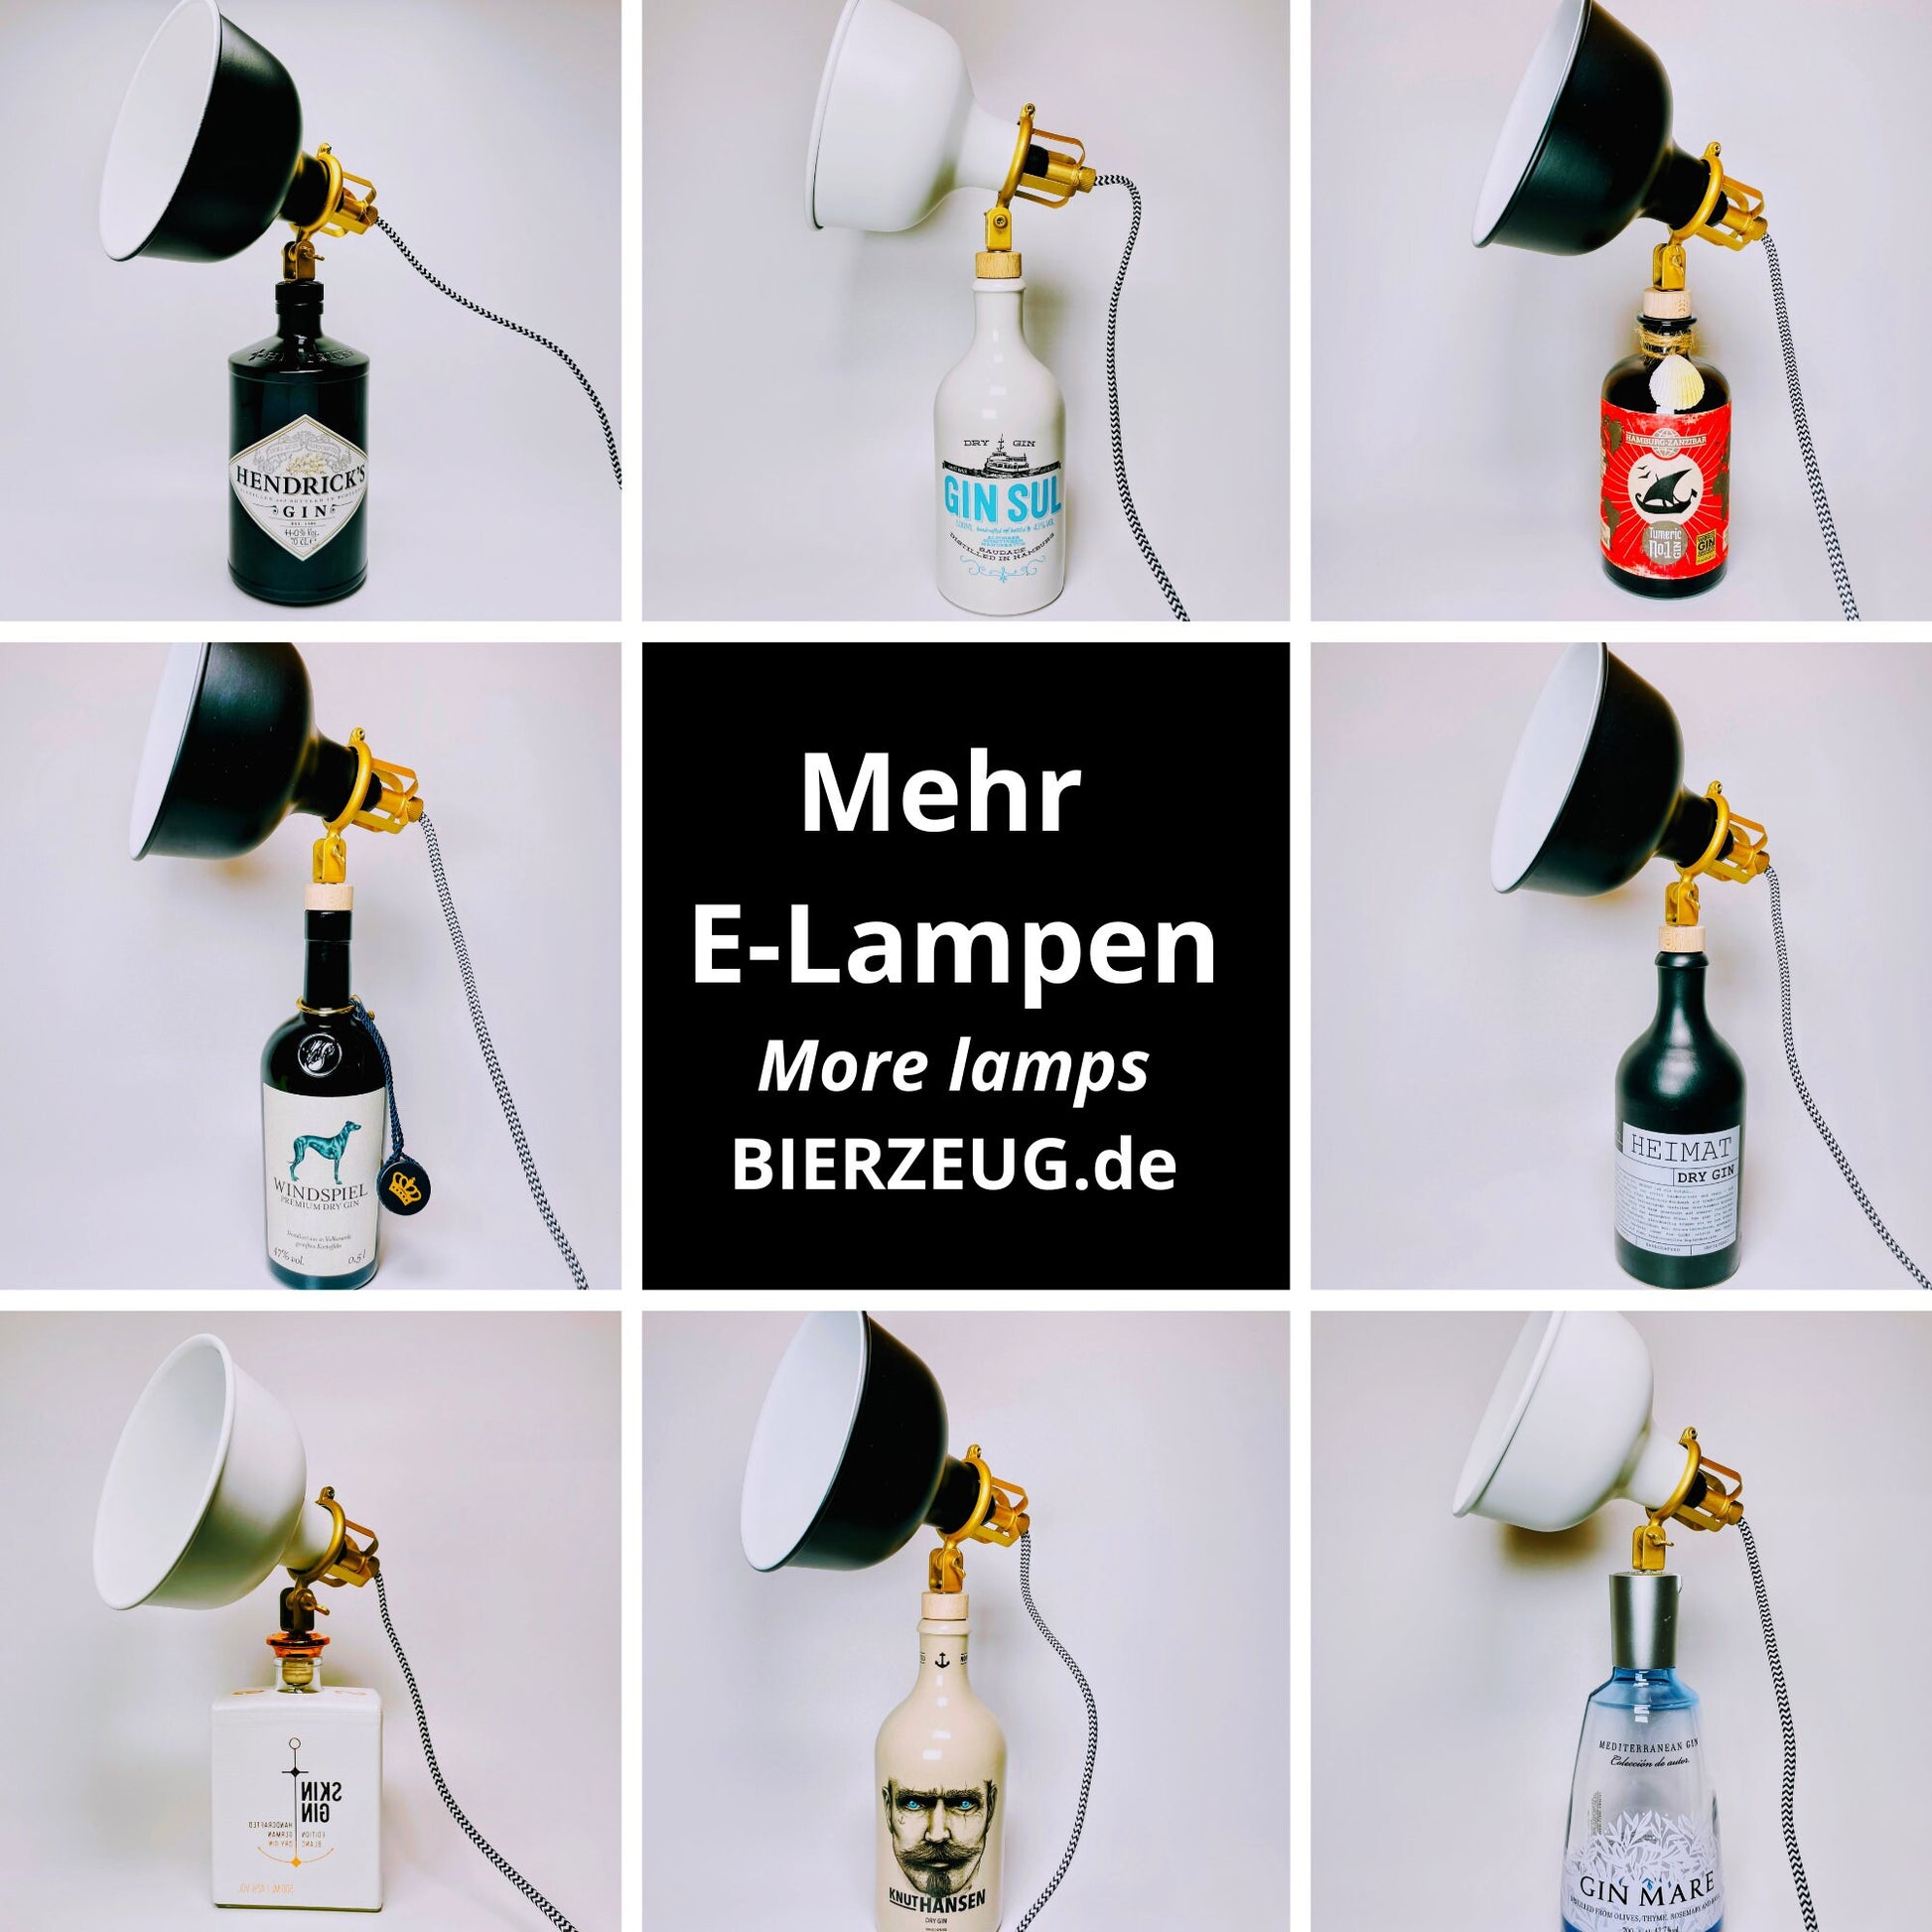 Windspiel Gin Vintage-Lampe | Handgemachte nachhaltige Tischlampe aus Windspiel Gin | Einzigartige Geschenkidee | Deko-Licht | Upcycling